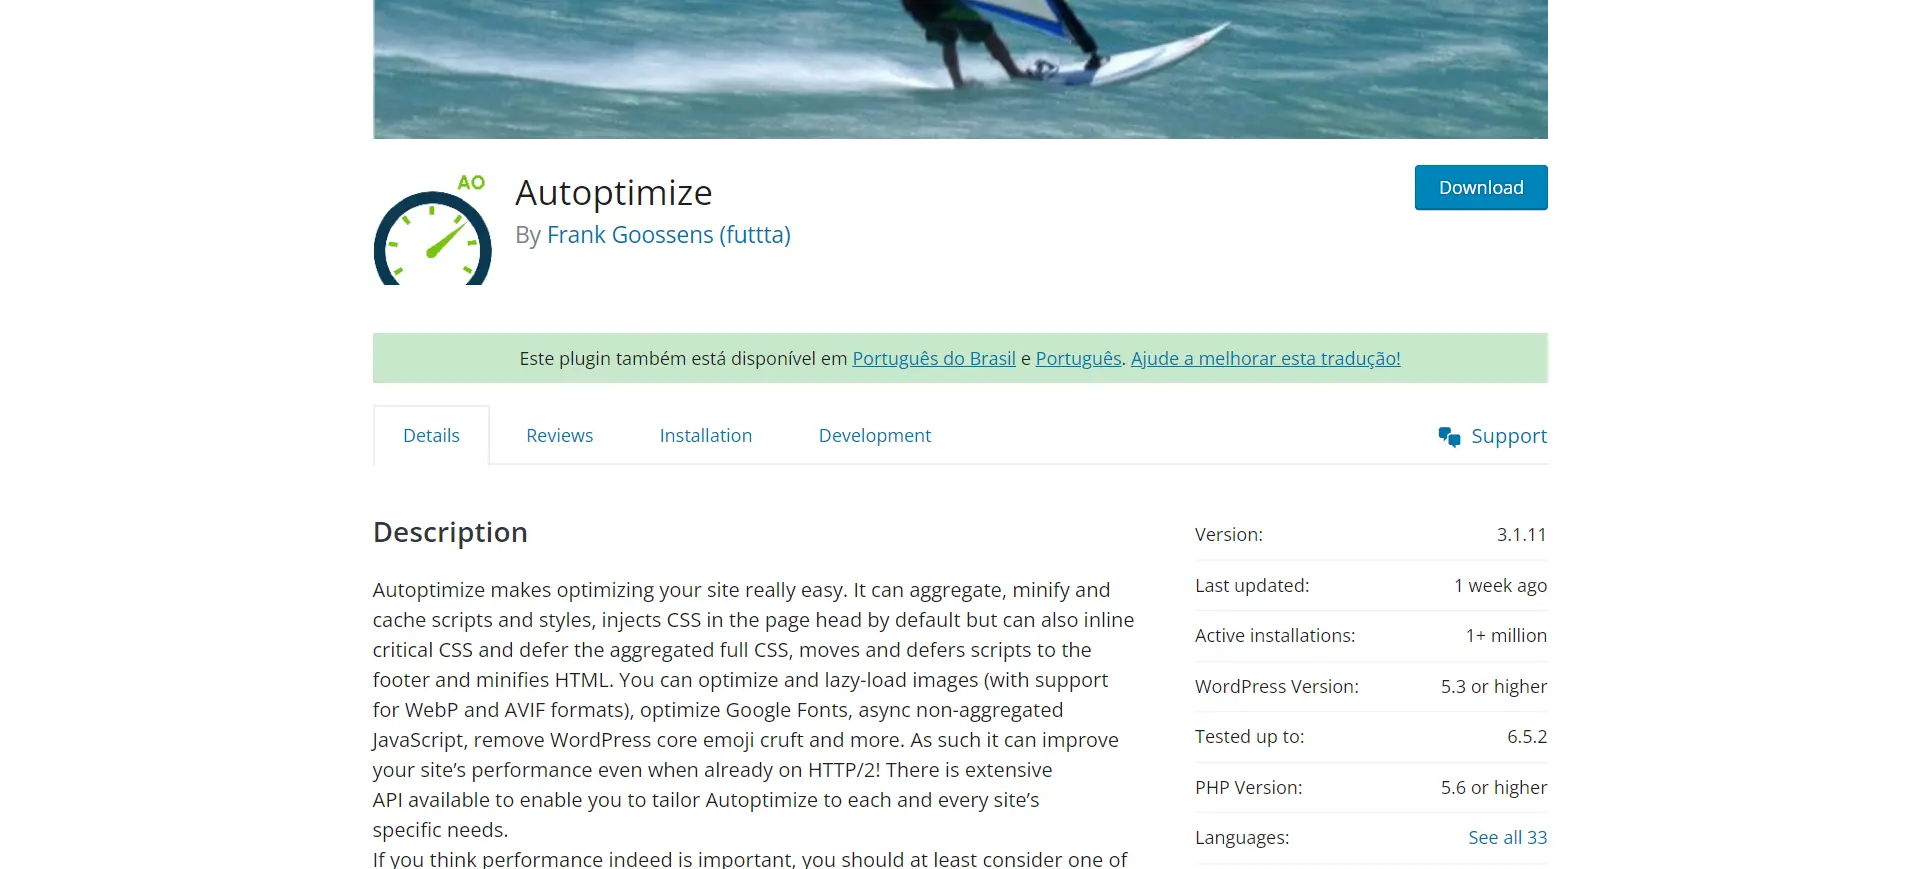 Autoptimize: Review & Tutorial to Pass Core Web Vitals